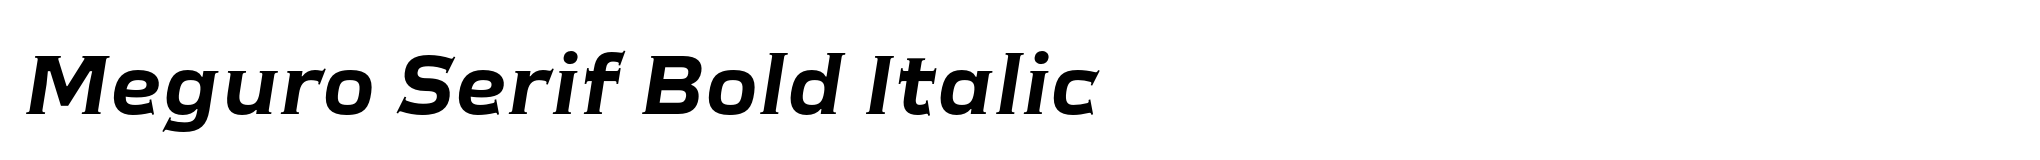 Meguro Serif Bold Italic image